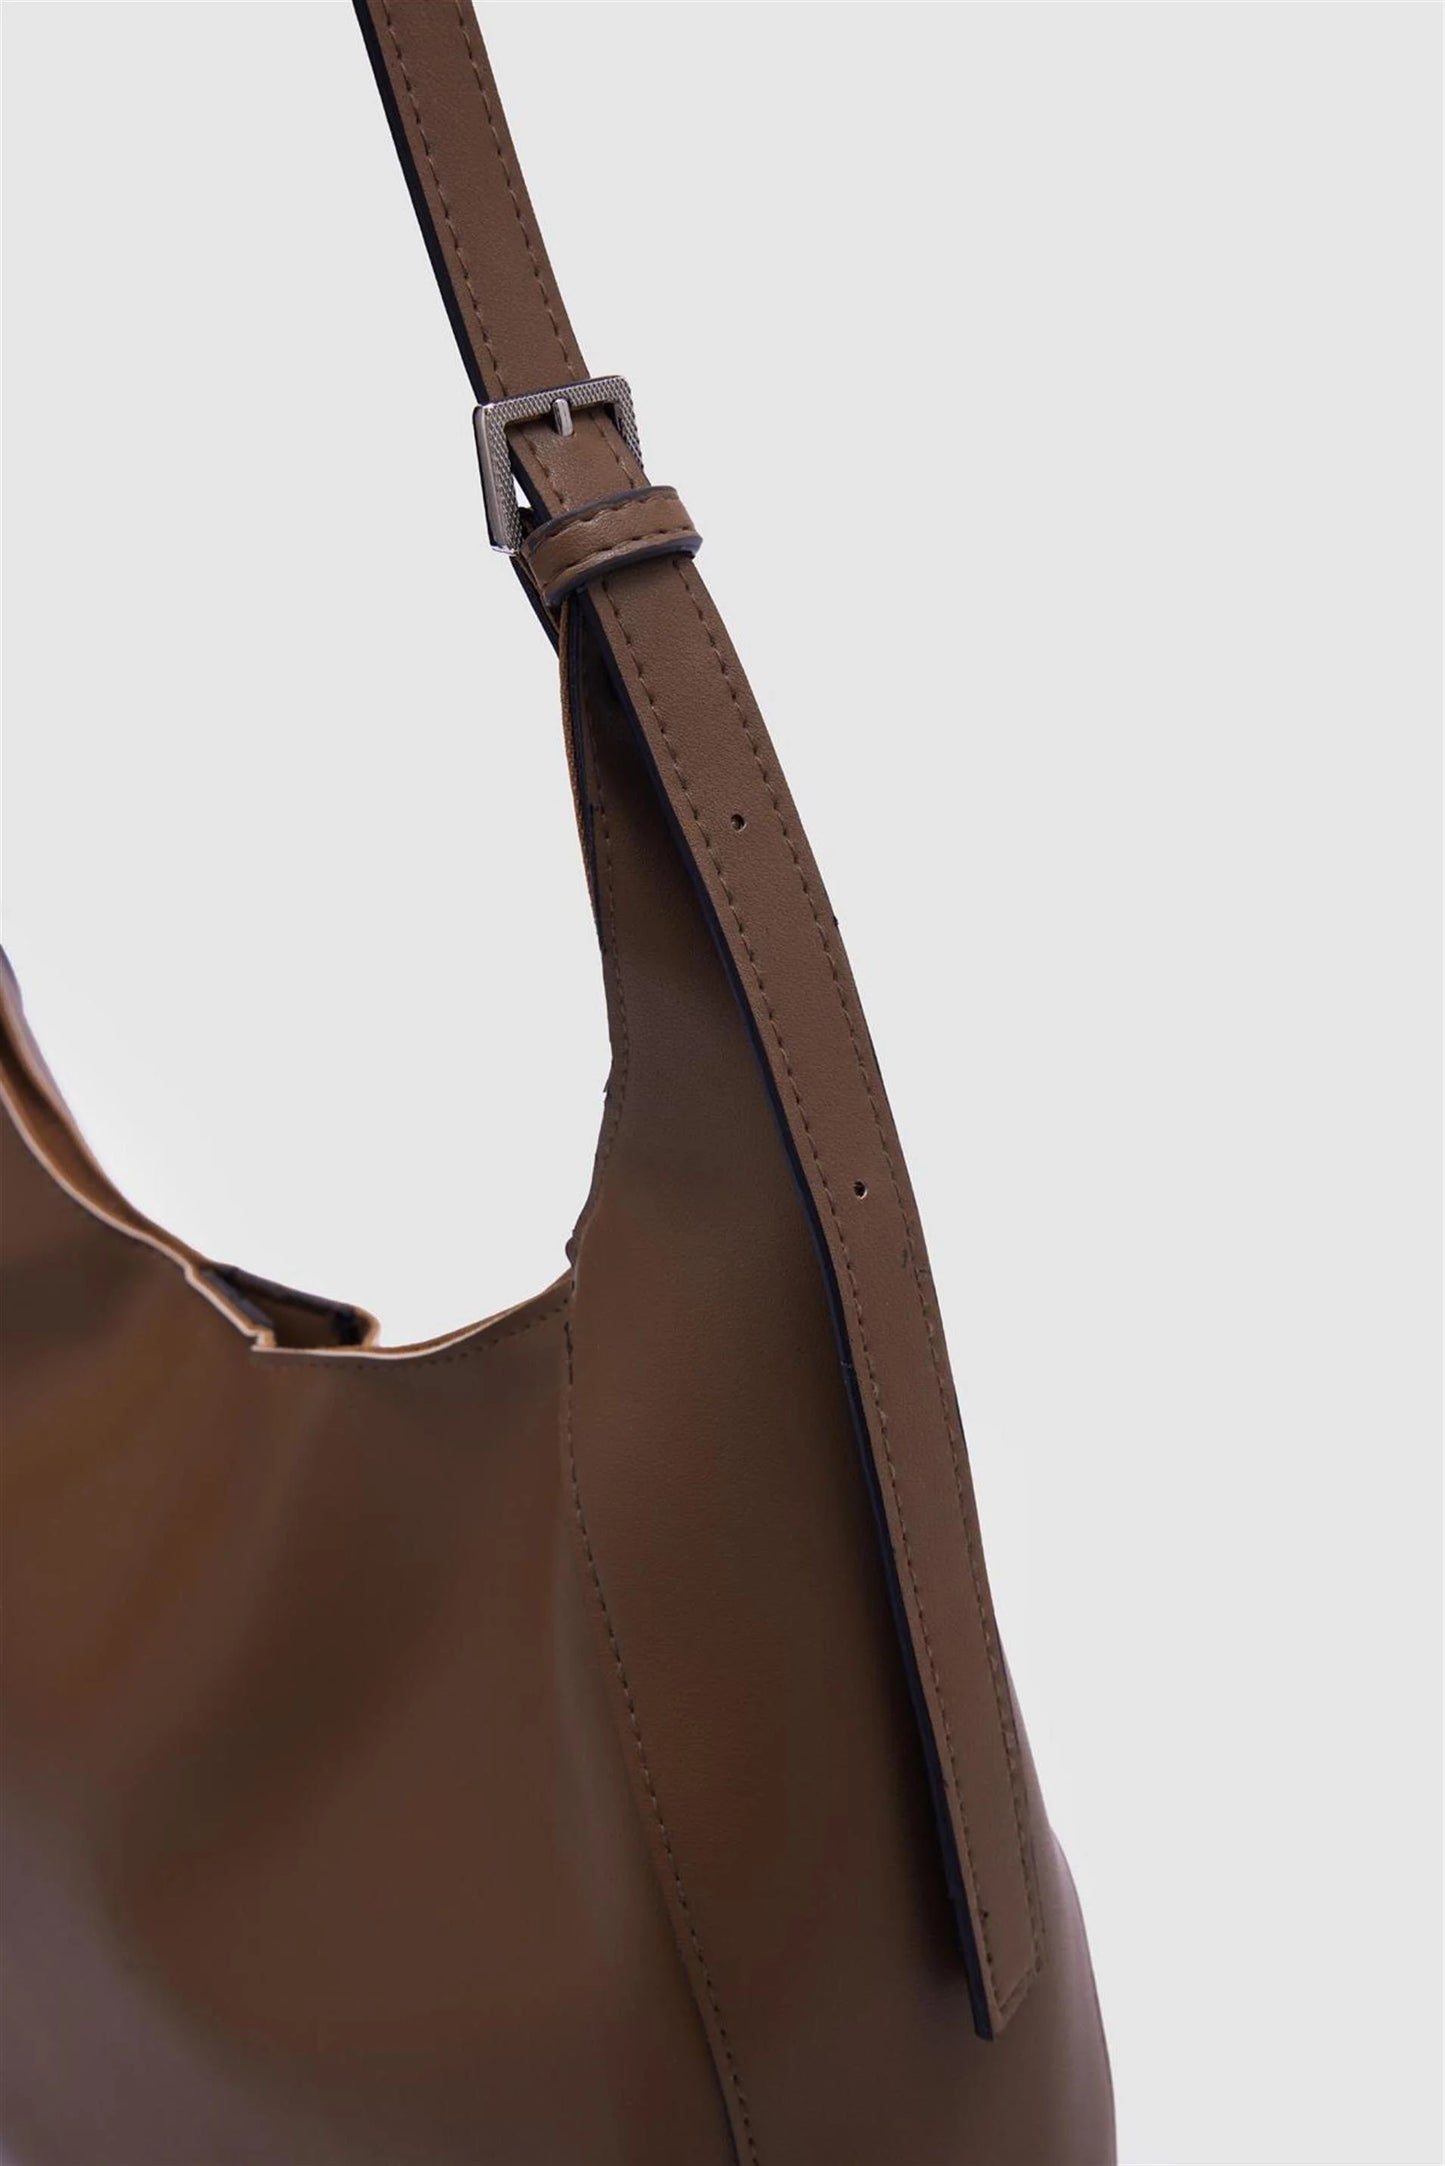 Faux Leather Mink Bigger Shoulder Bag shoulder bag LUNARITY GARAGE   